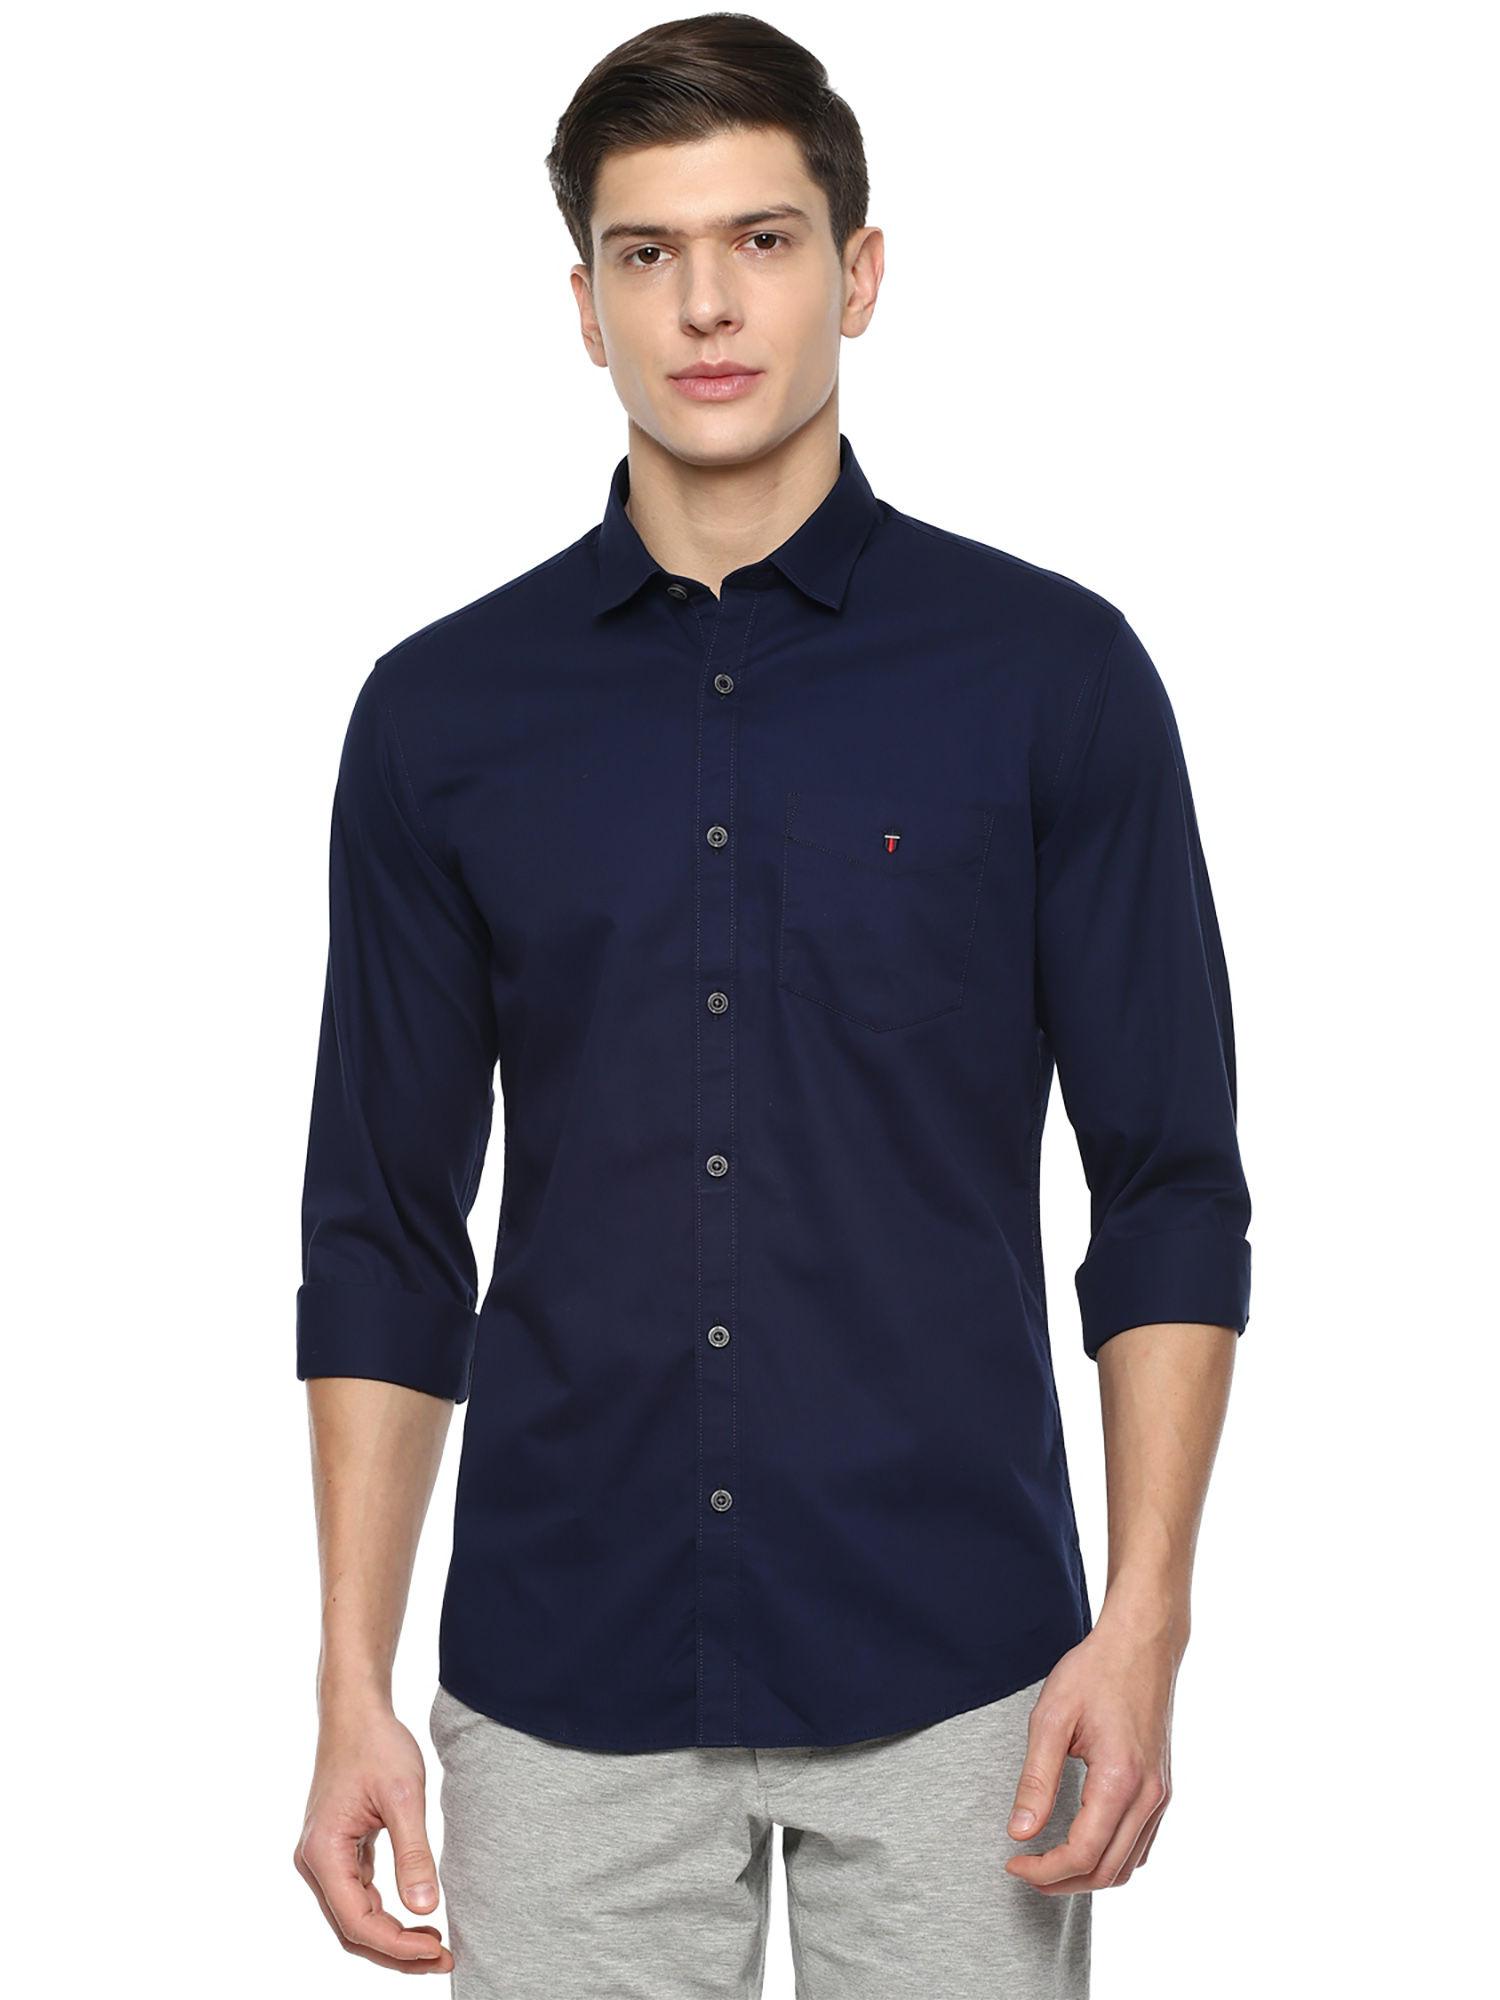 navy-blue-shirt